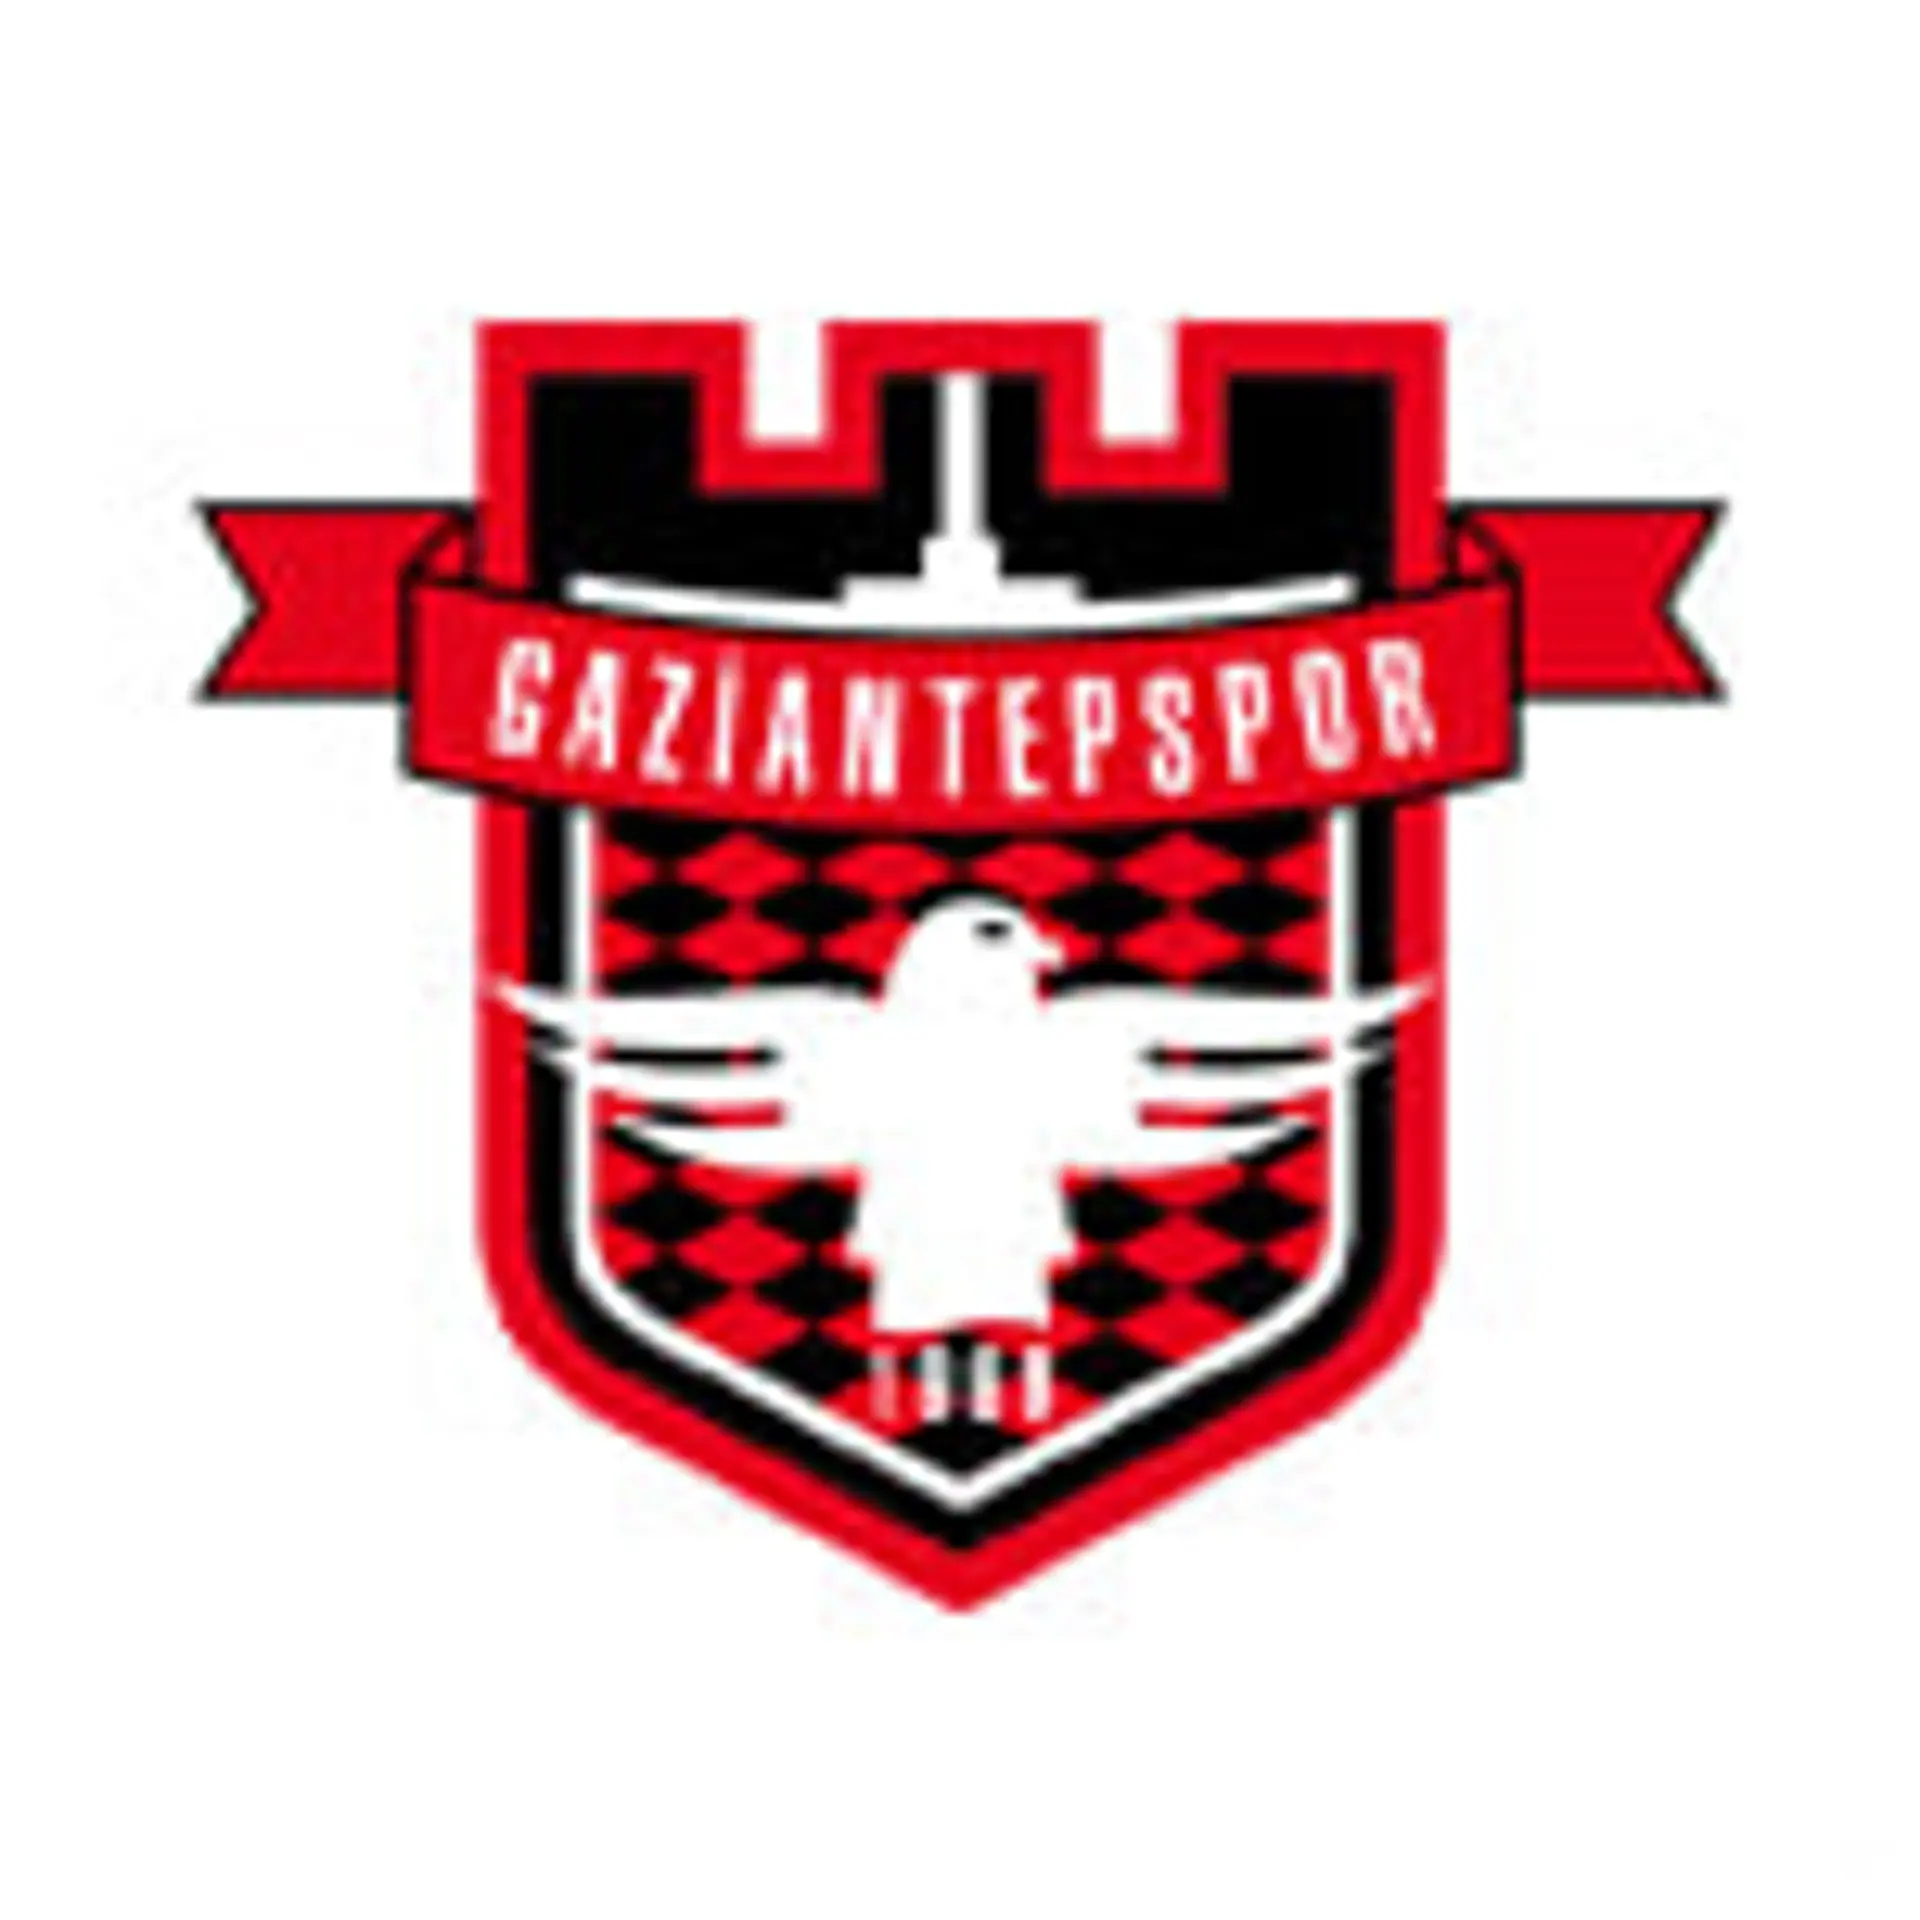 Gaziantepspor  Table